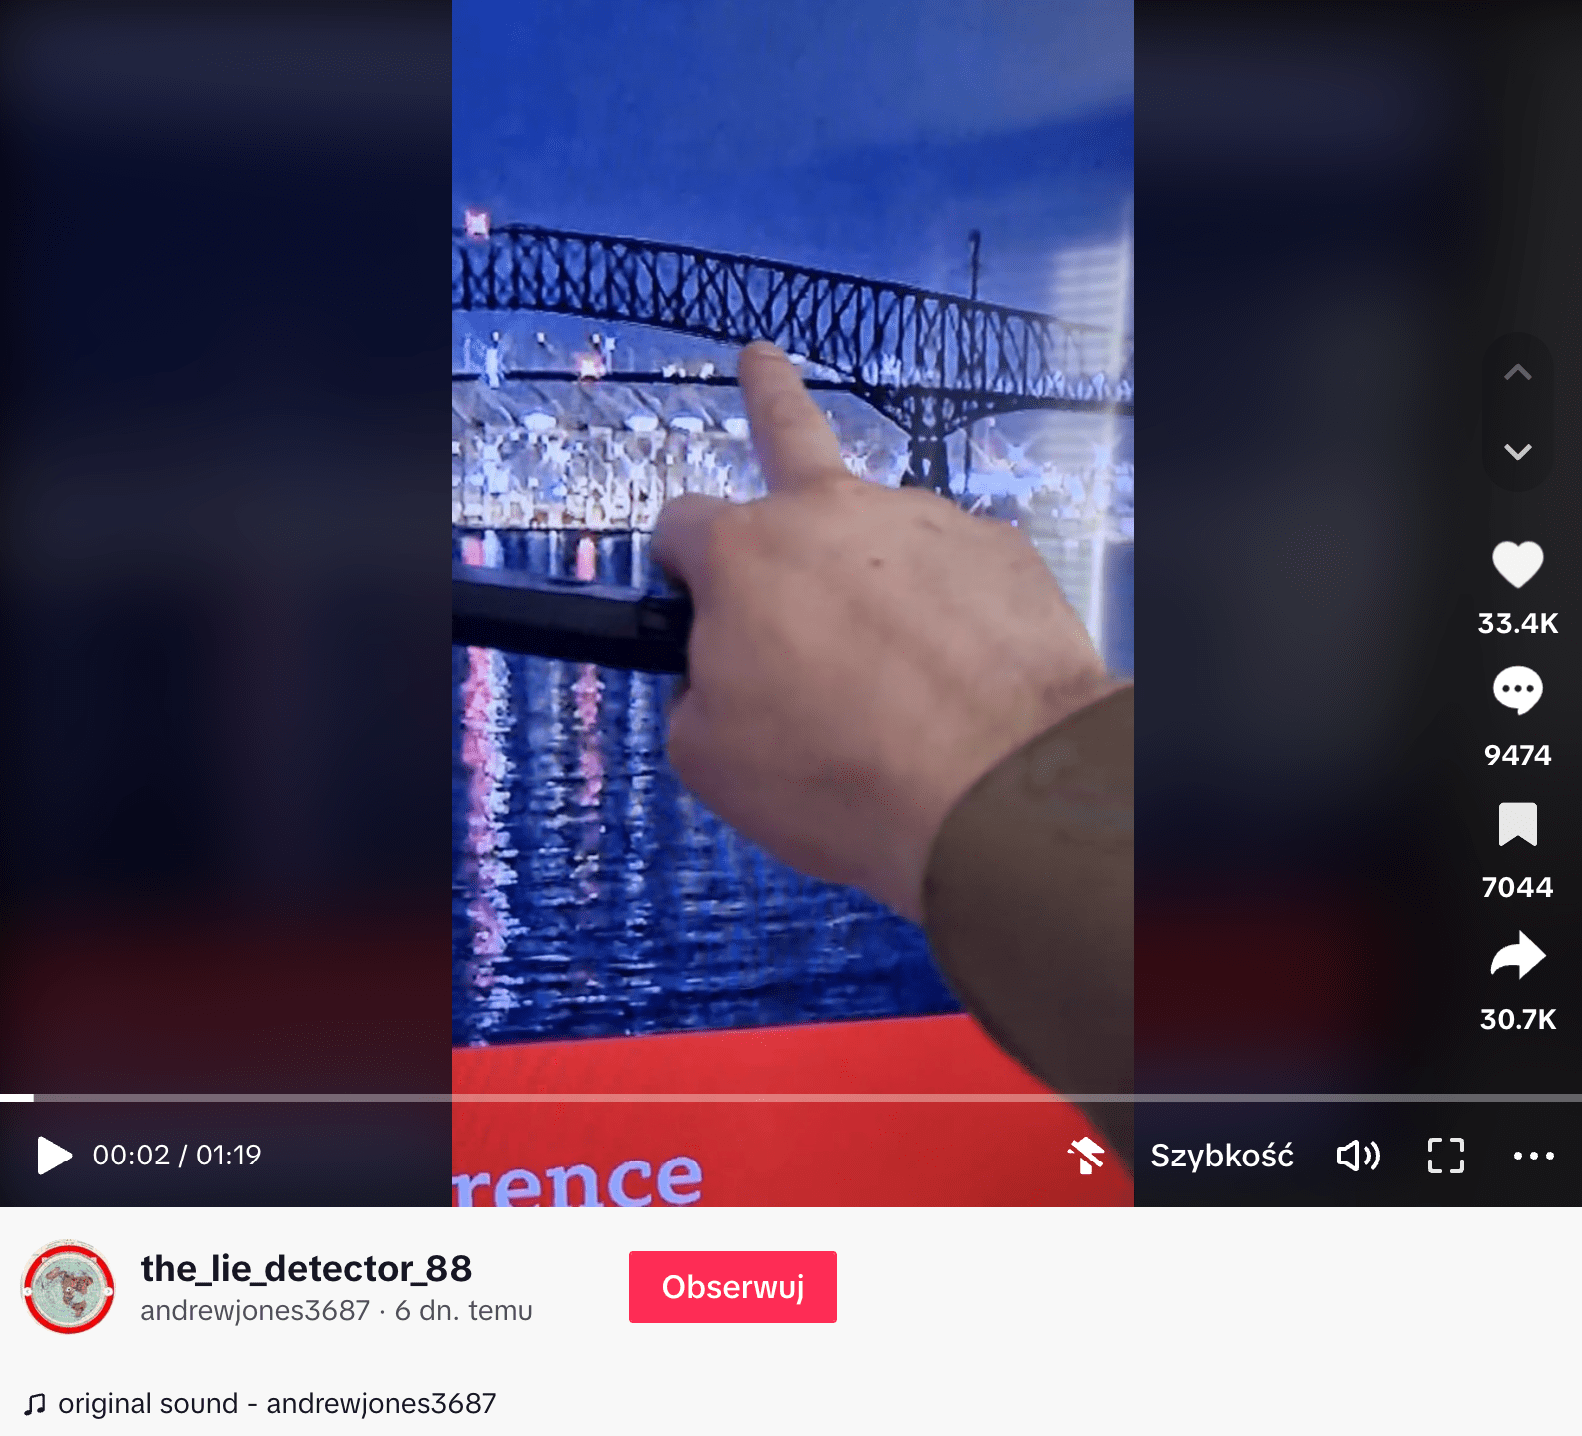 Zrzut ekranu omawianego nagrania na TikToku. Widoczny jest most nocą i ręka mężczyzny wskazującego na ekran. Nagranie zdobyło ponad 33,4 tys. polubień i 9 474 komentarzy. Ponad 30,7 tys. użytkowników udostępniło je dalej, a 7 044 zapisało.